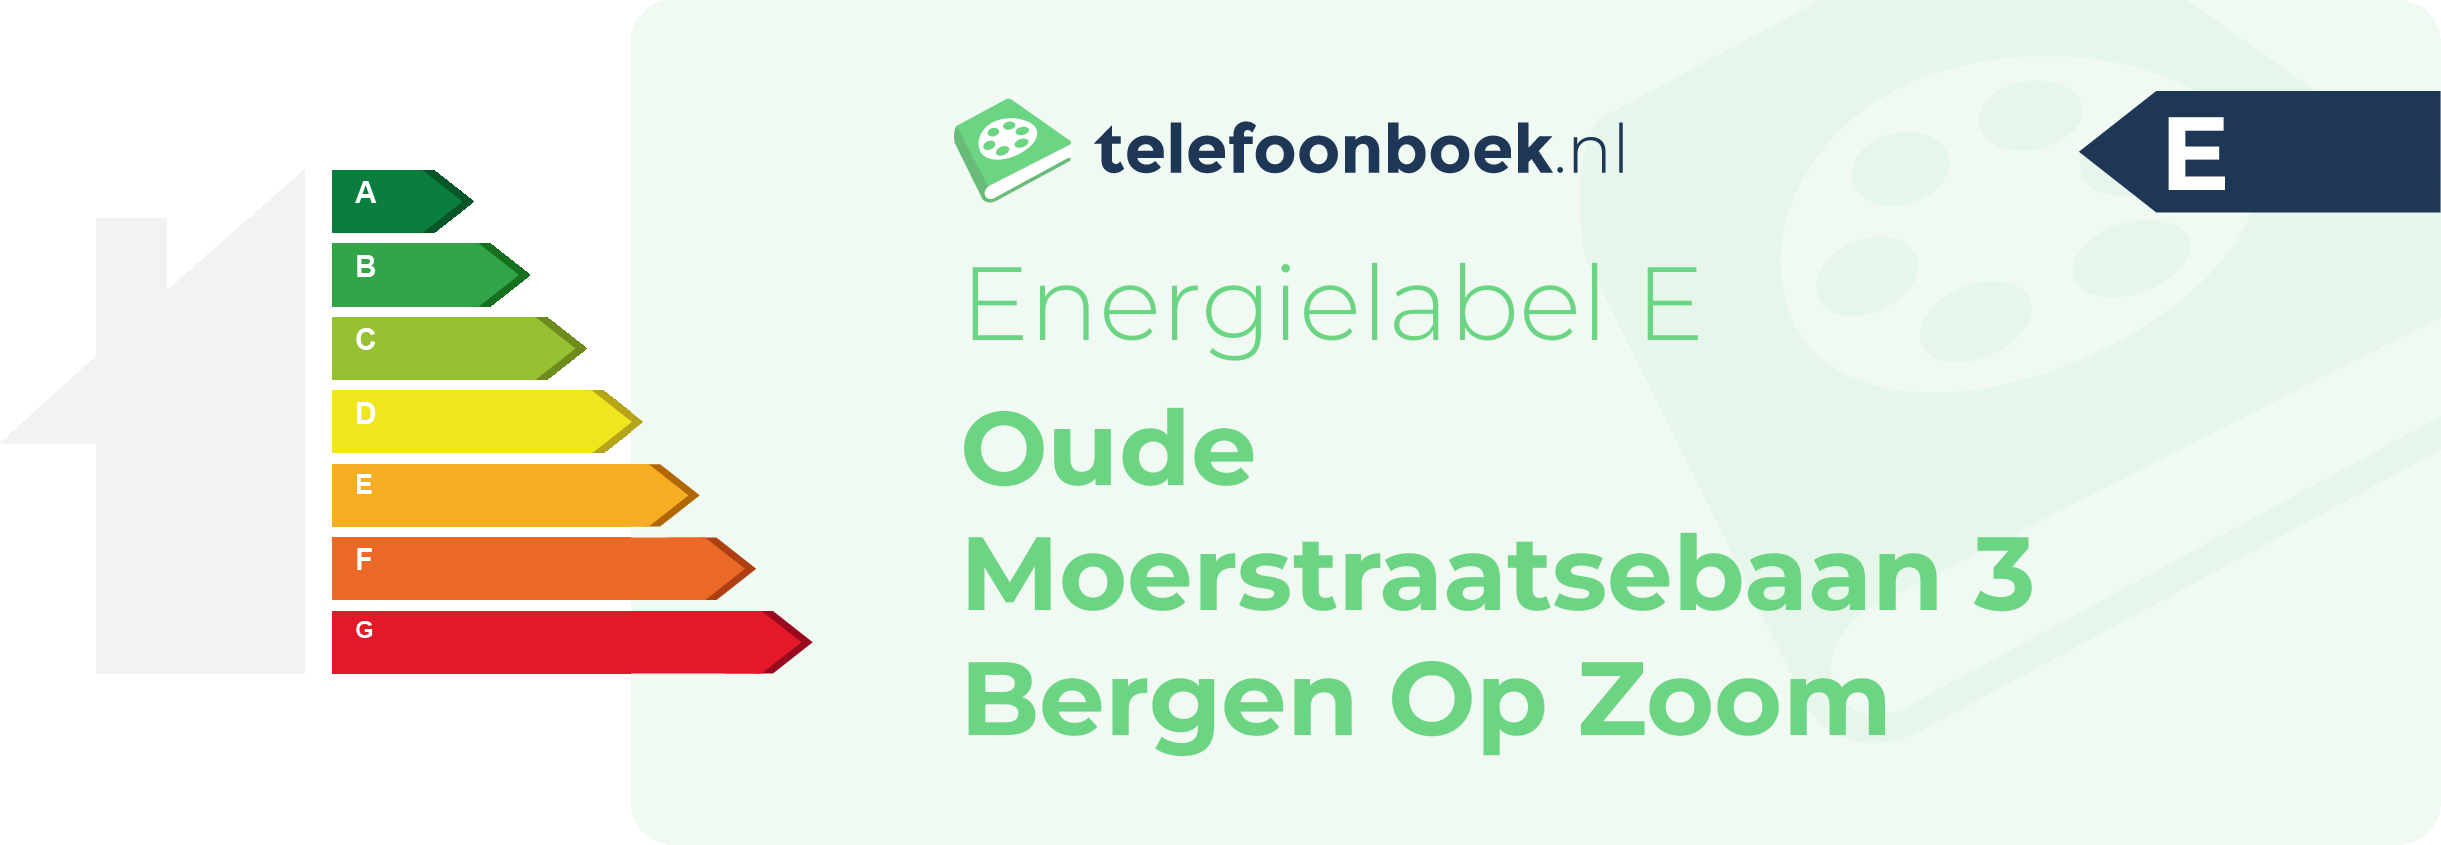 Energielabel Oude Moerstraatsebaan 3 Bergen Op Zoom